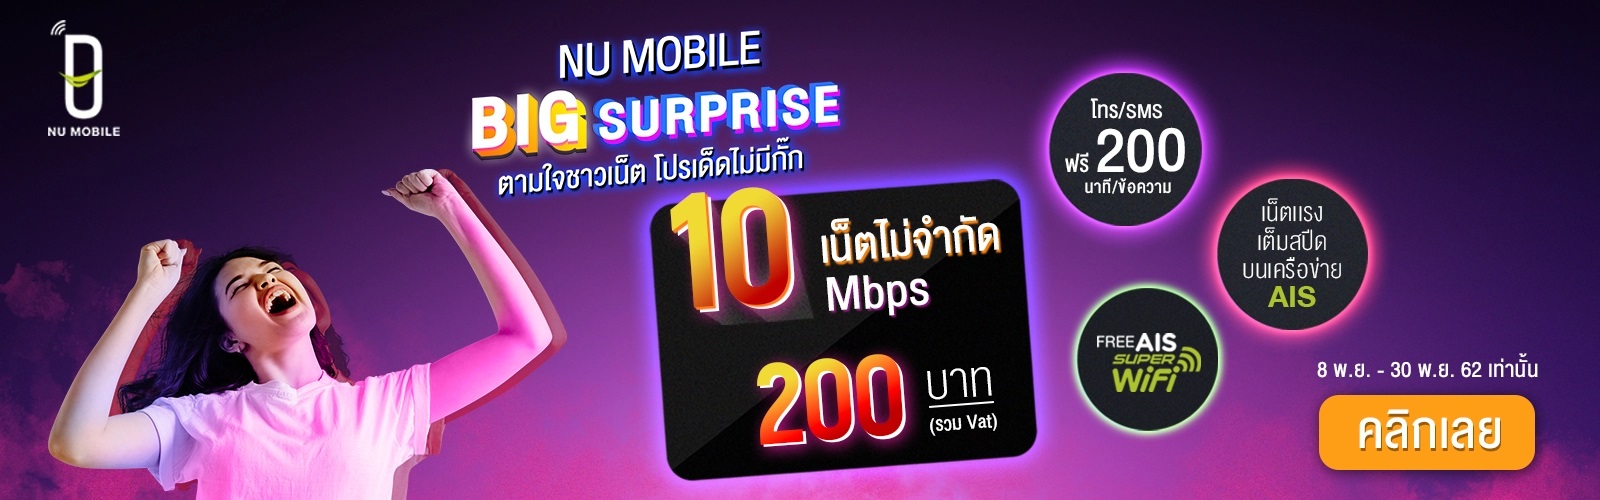 โปรใหม่ NU Mobile เนตไม่จำกัดความเร็ว 10 Mbps เดือนละ 200 บาท